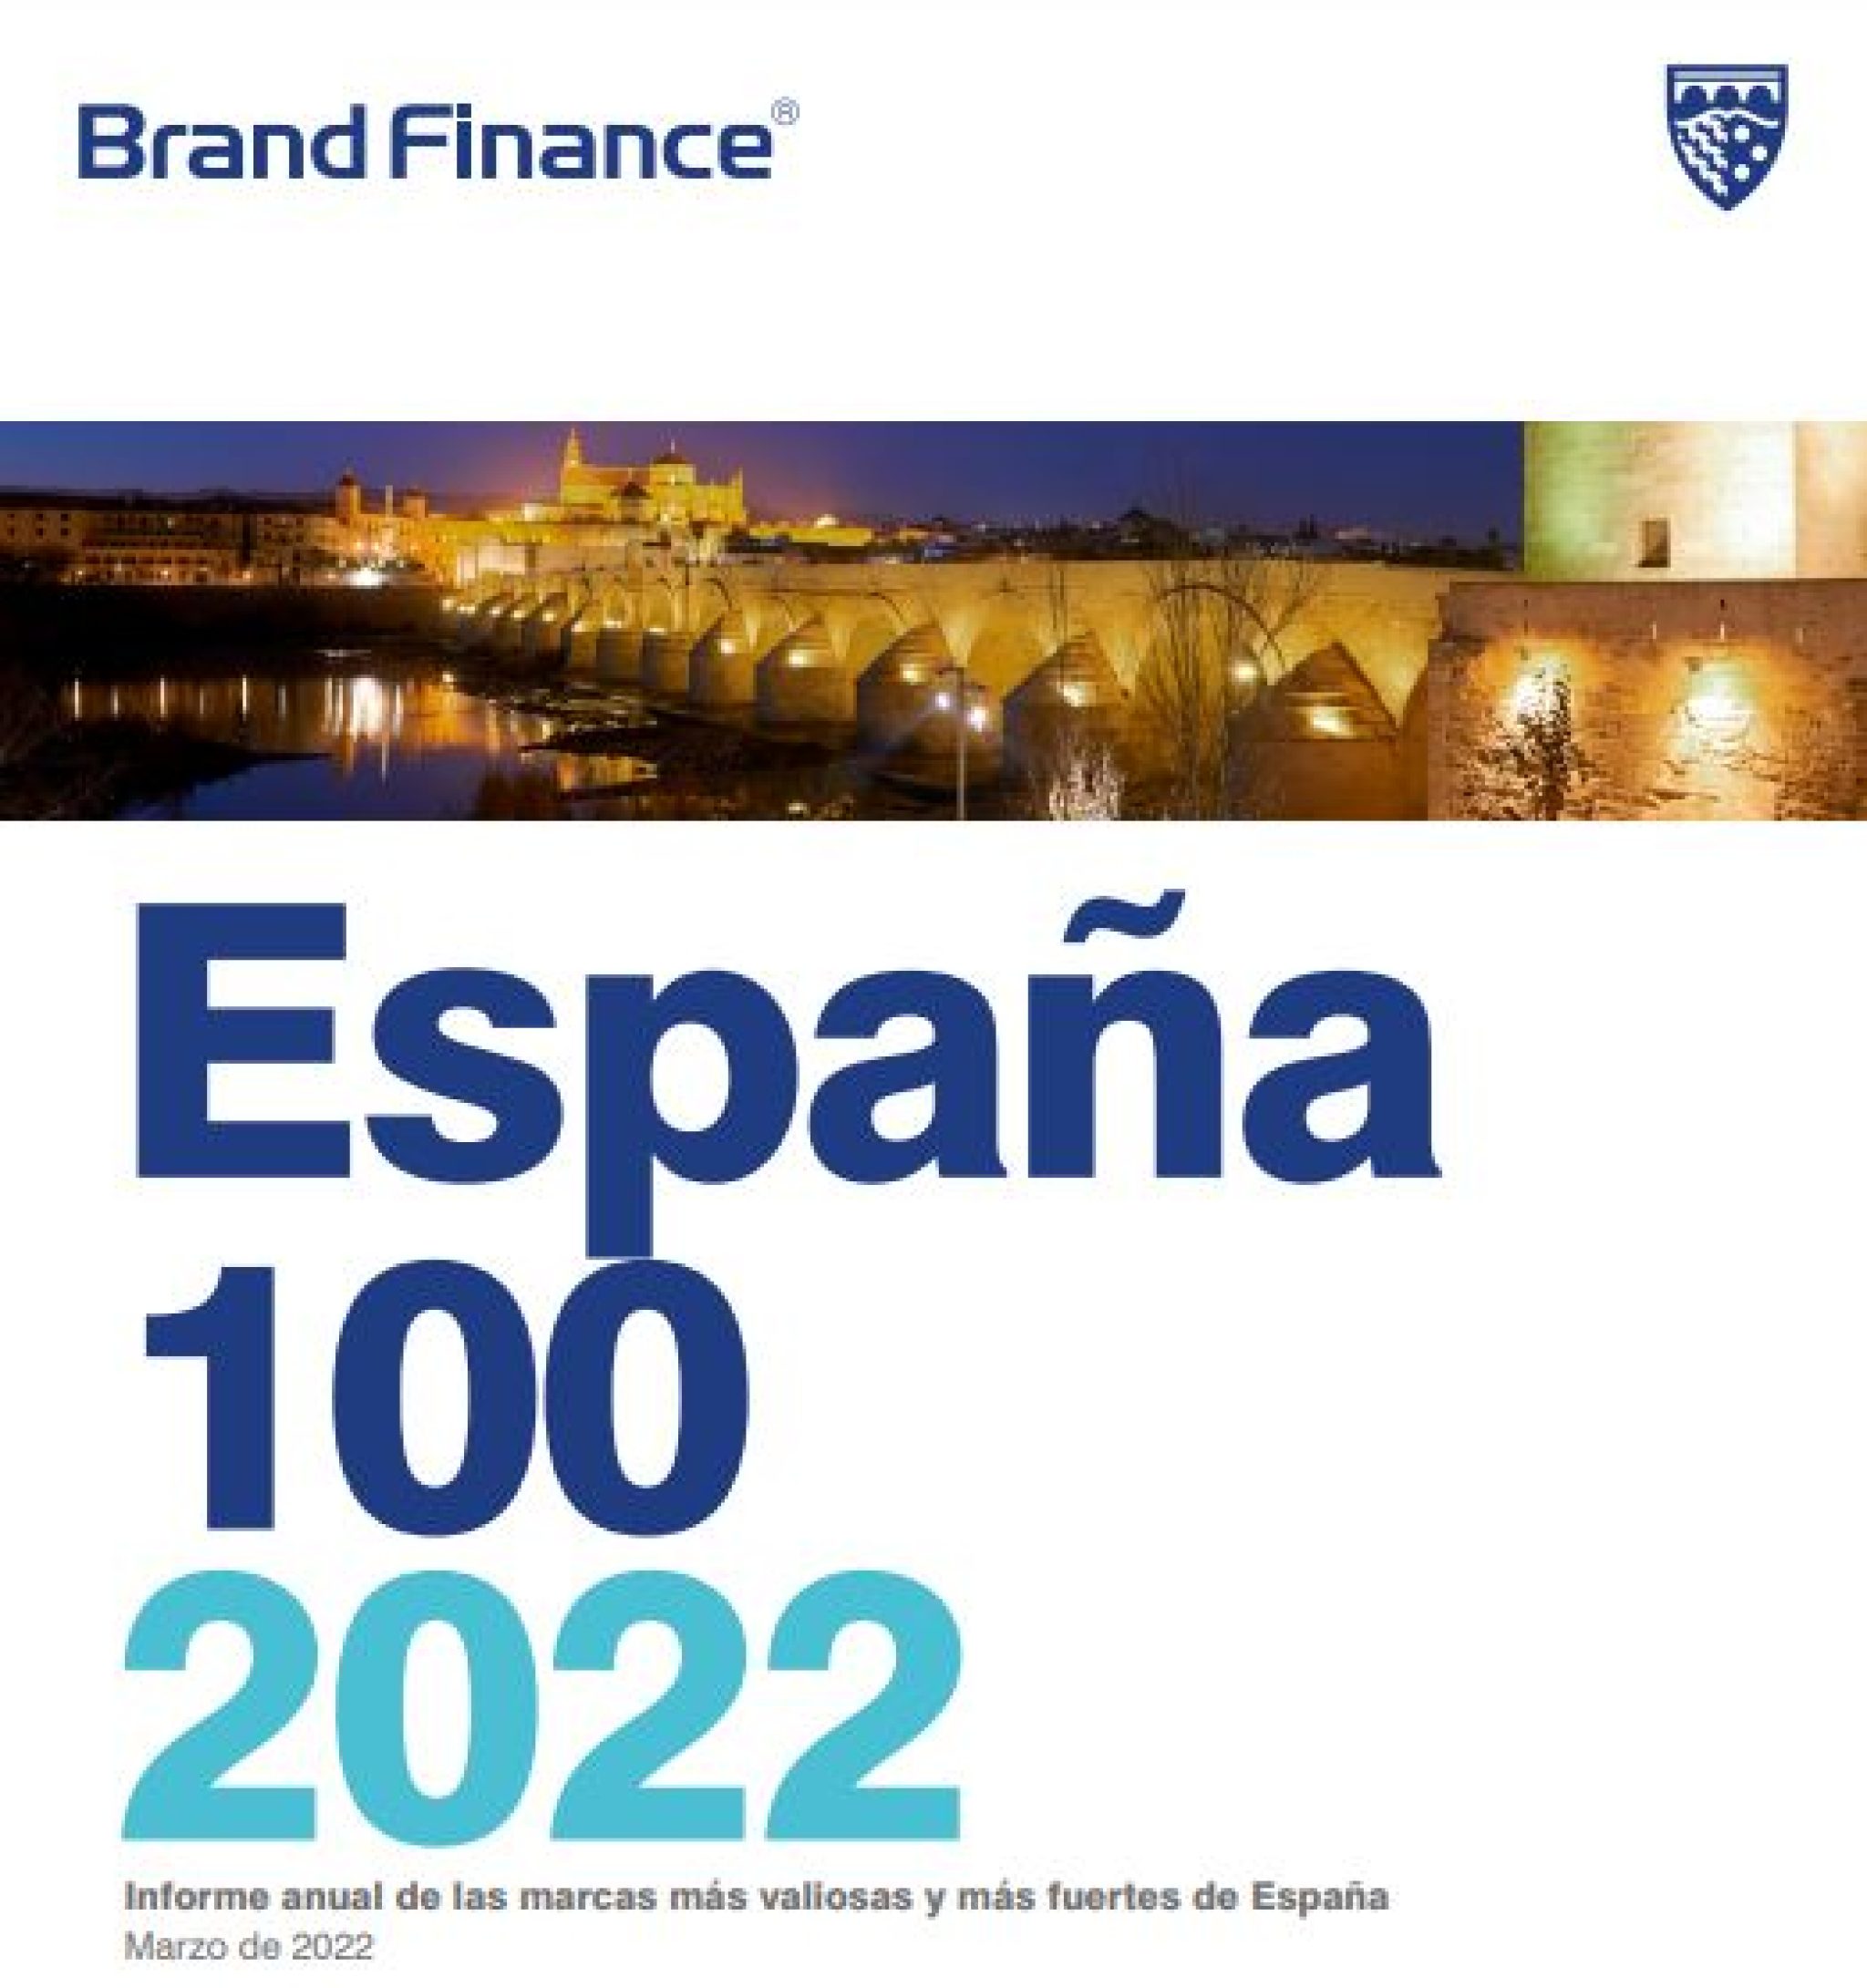 9 marcas del Foro entre las 10 más valiosas de España, según Brand Finance